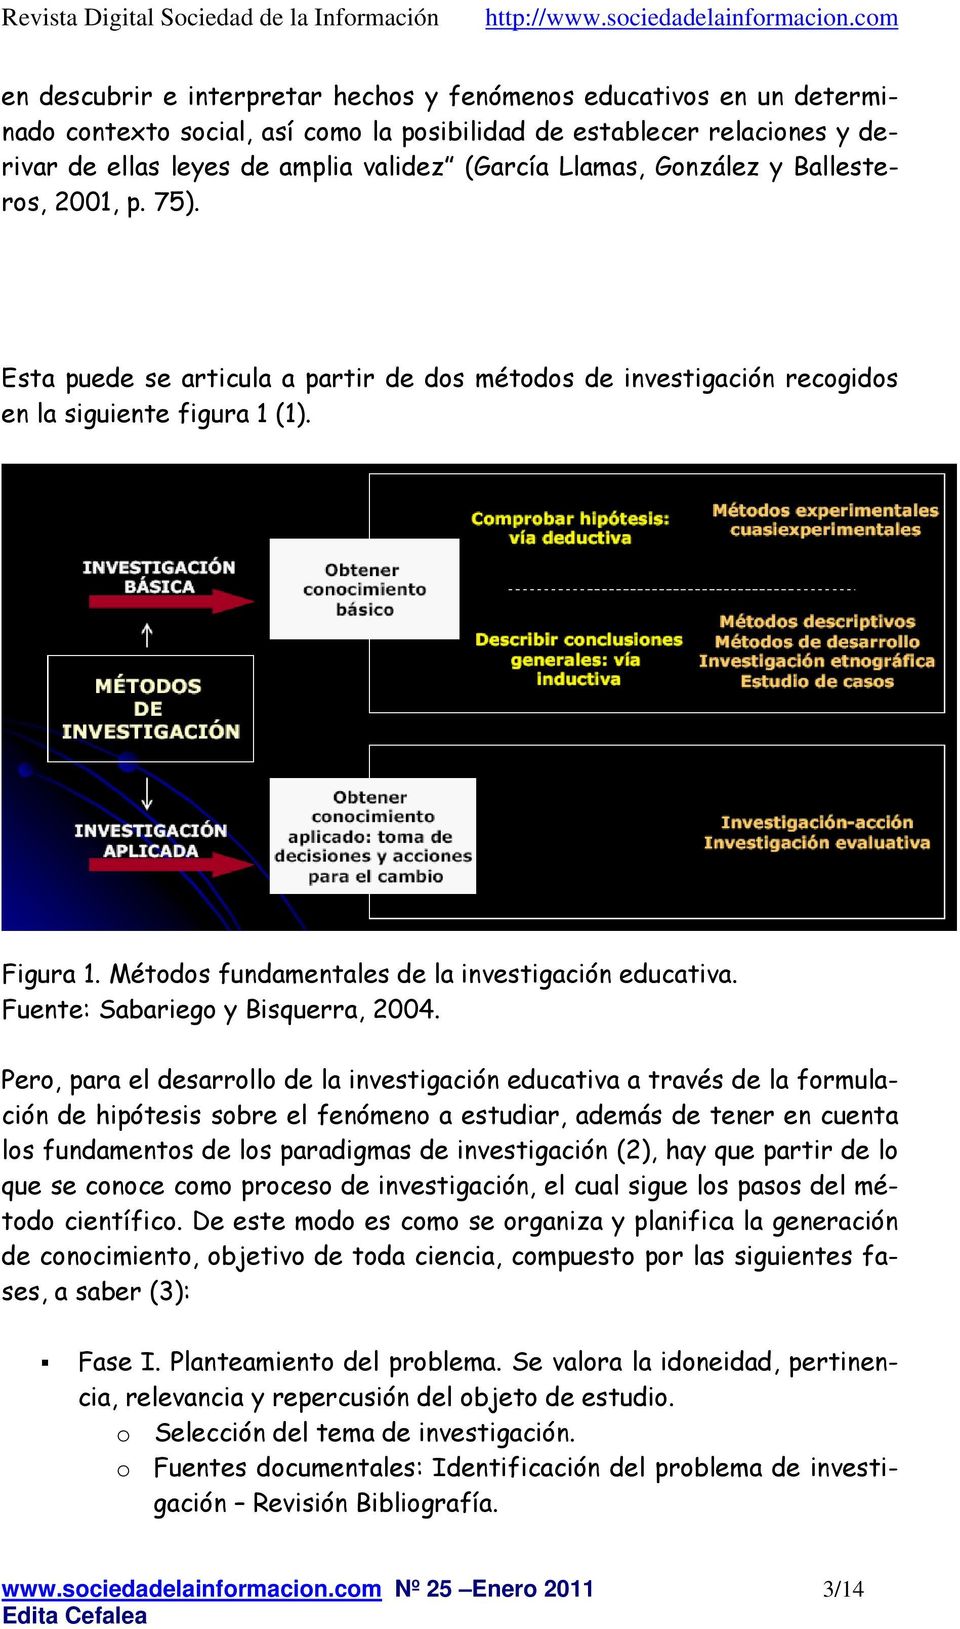 Métodos fundamentales de la investigación educativa. Fuente: Sabariego y Bisquerra, 2004.